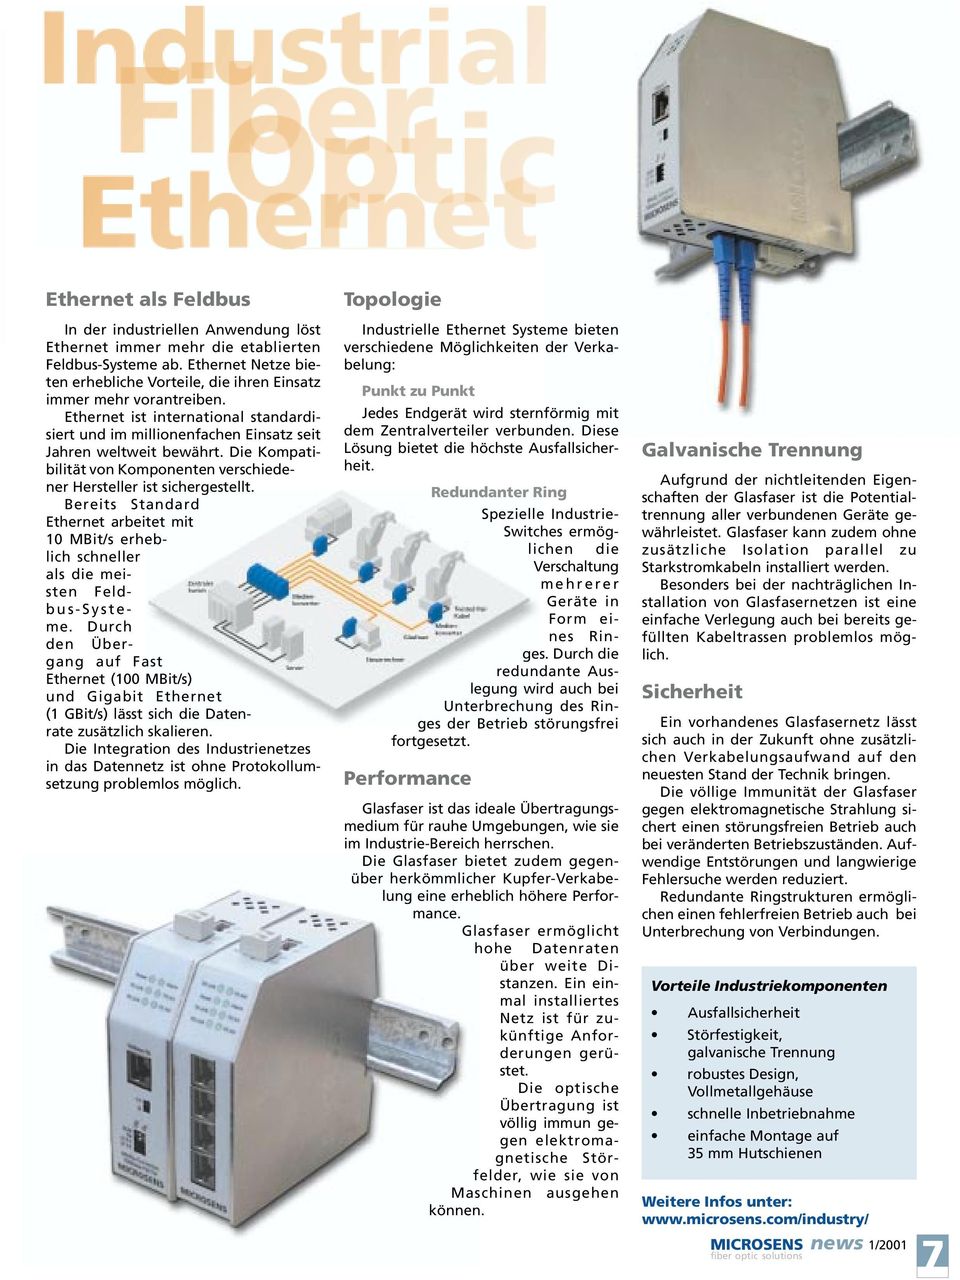 Bereits Standard Ethernet arbeitet mit 10 MBit/s erheblich schneller als die meisten Feldbus-Systeme.